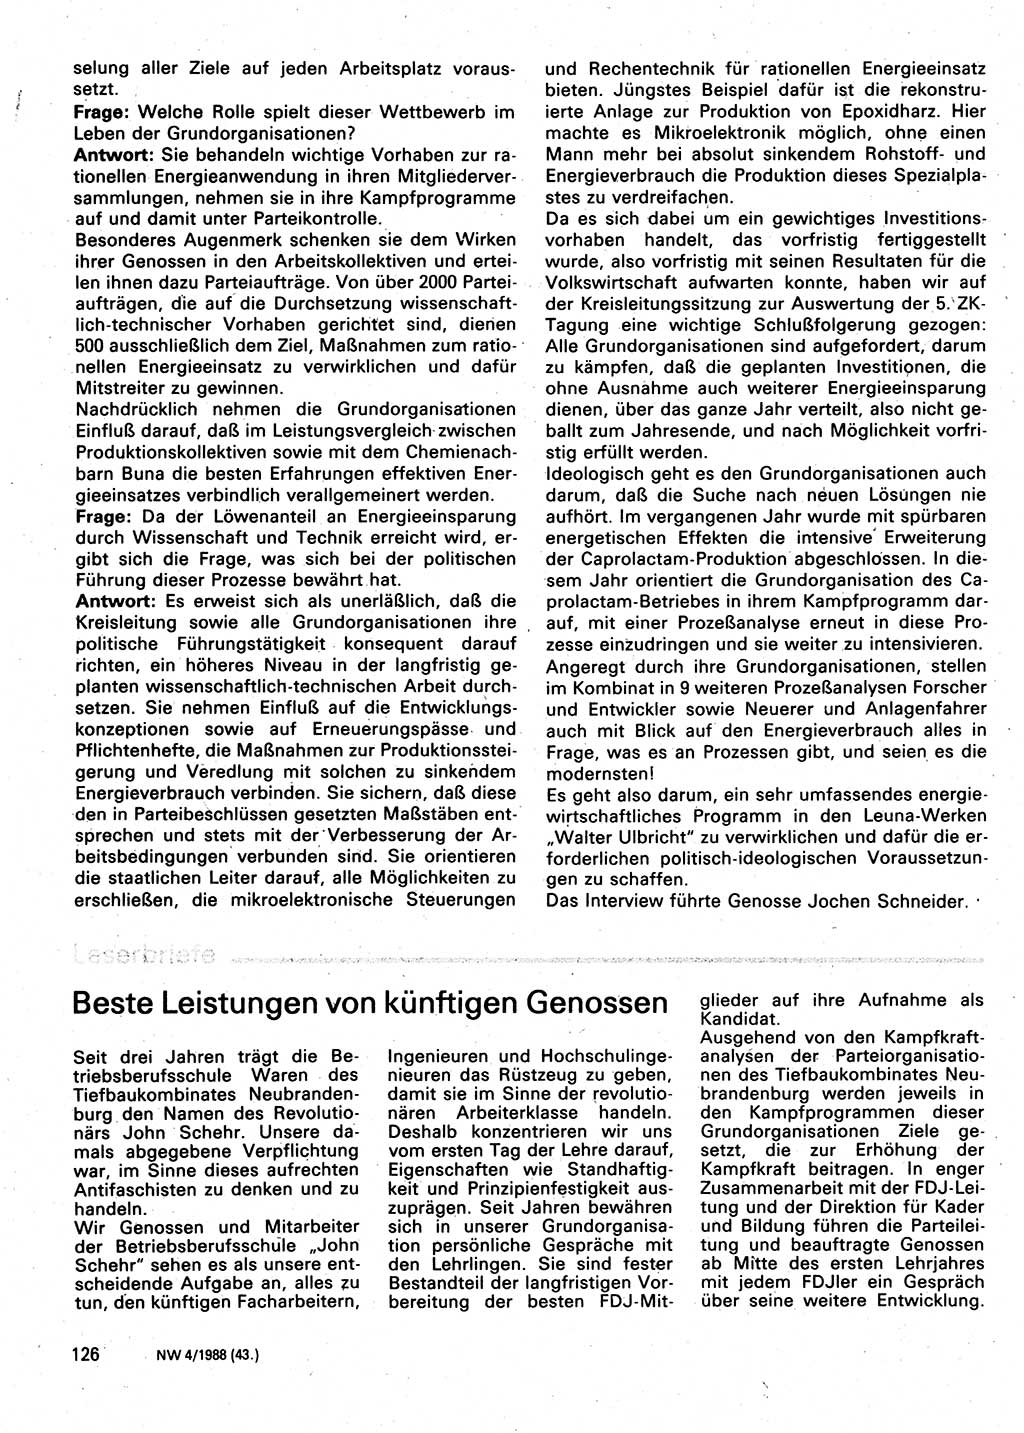 Neuer Weg (NW), Organ des Zentralkomitees (ZK) der SED (Sozialistische Einheitspartei Deutschlands) für Fragen des Parteilebens, 43. Jahrgang [Deutsche Demokratische Republik (DDR)] 1988, Seite 126 (NW ZK SED DDR 1988, S. 126)